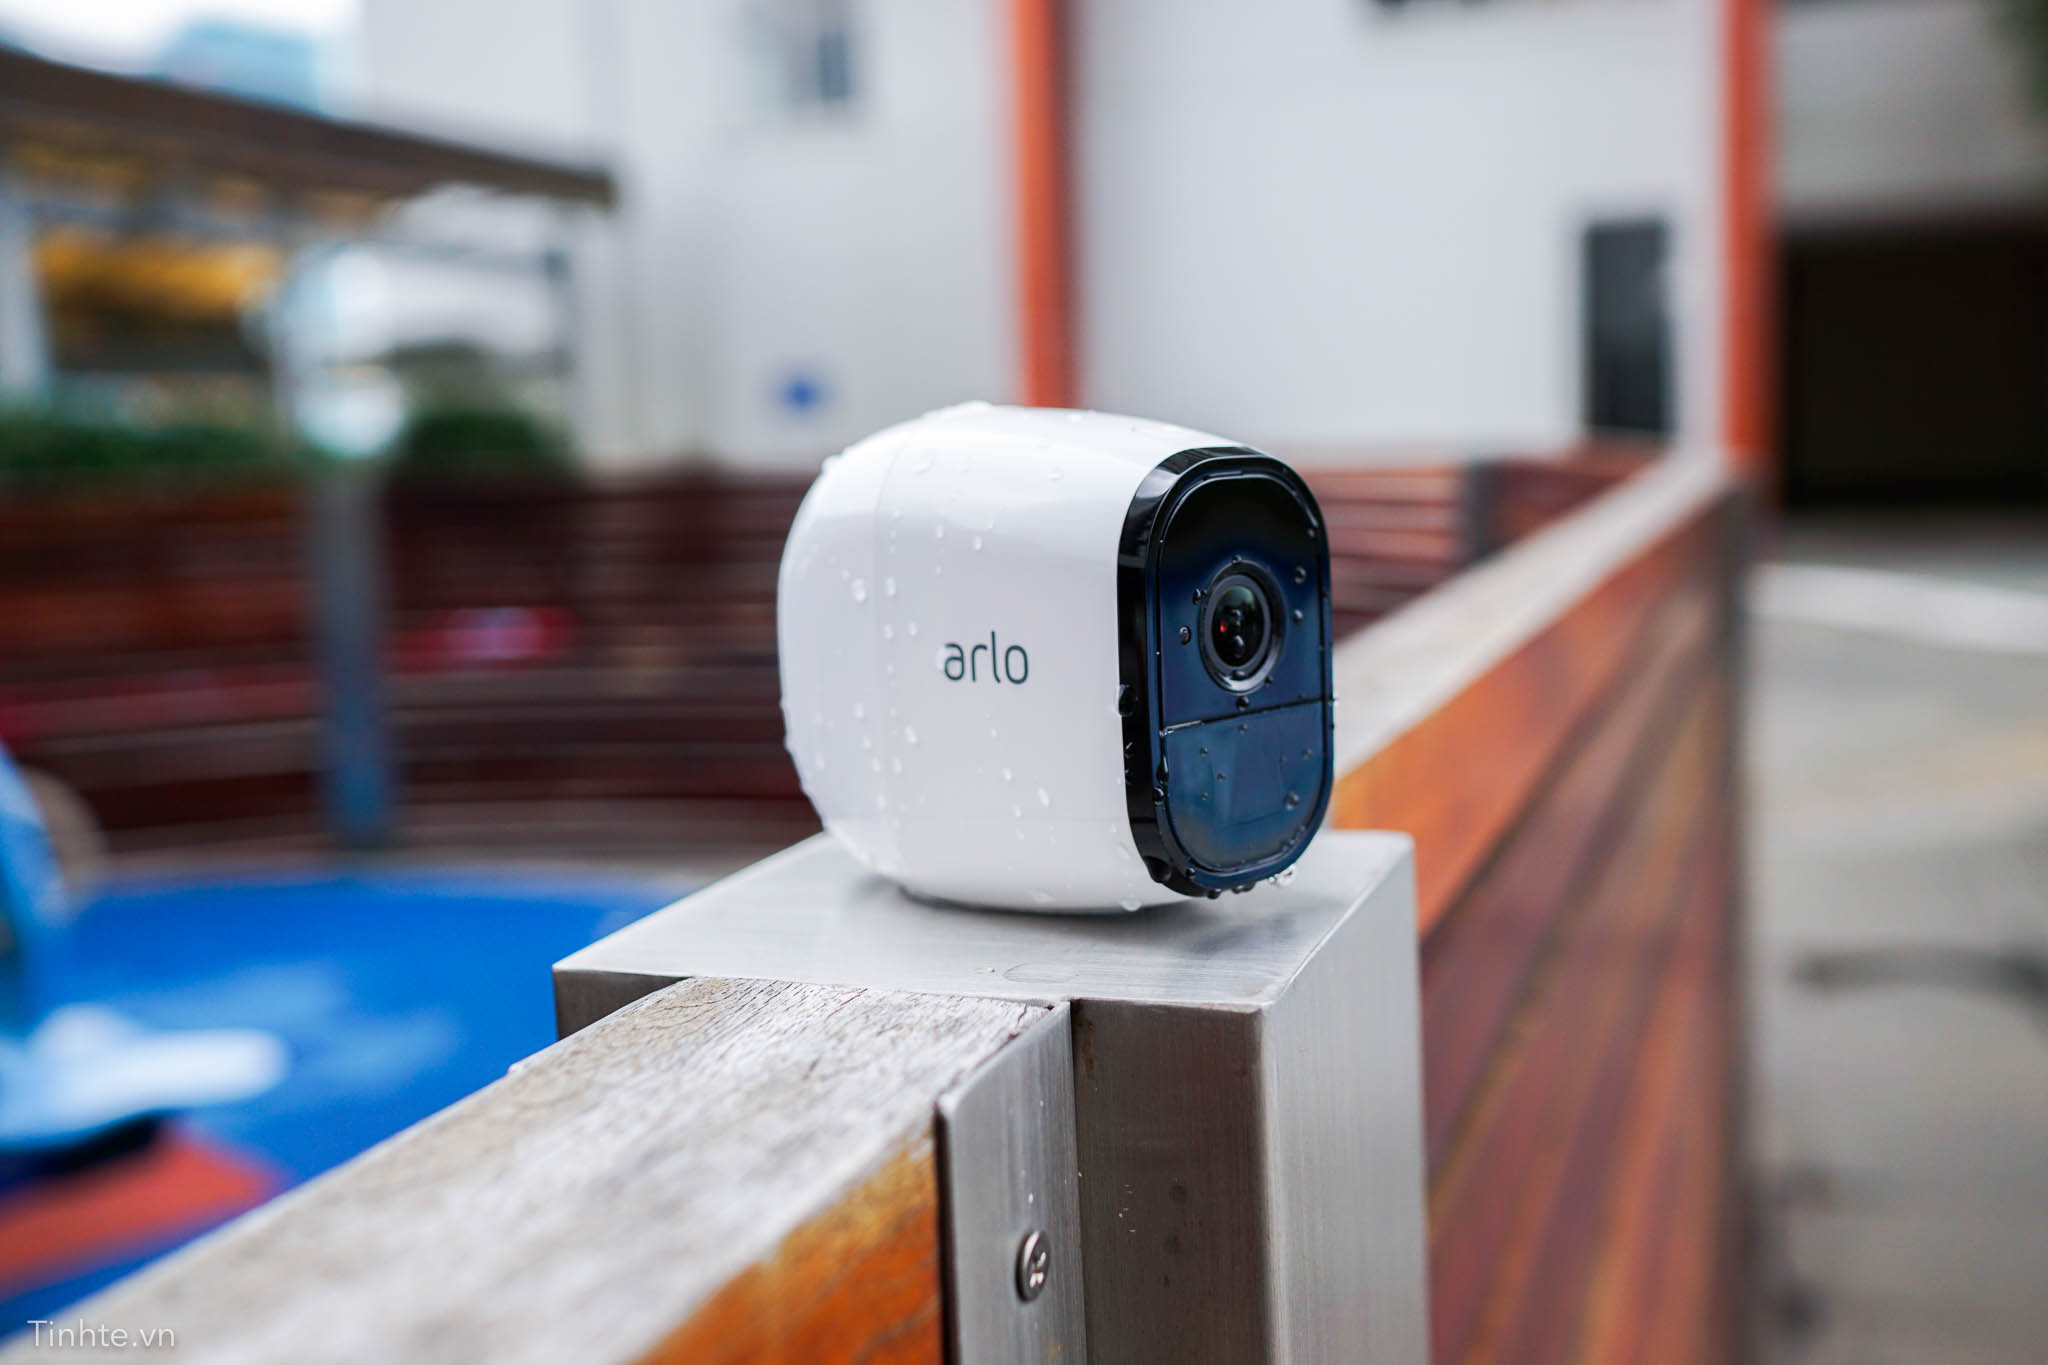 Netgear Arlo Pro: camera an ninh không dây đúng nghĩa, chống mưa gió, pin 6 tháng sạc 1 lần 4195397_tinhte-netgear-arlo-14